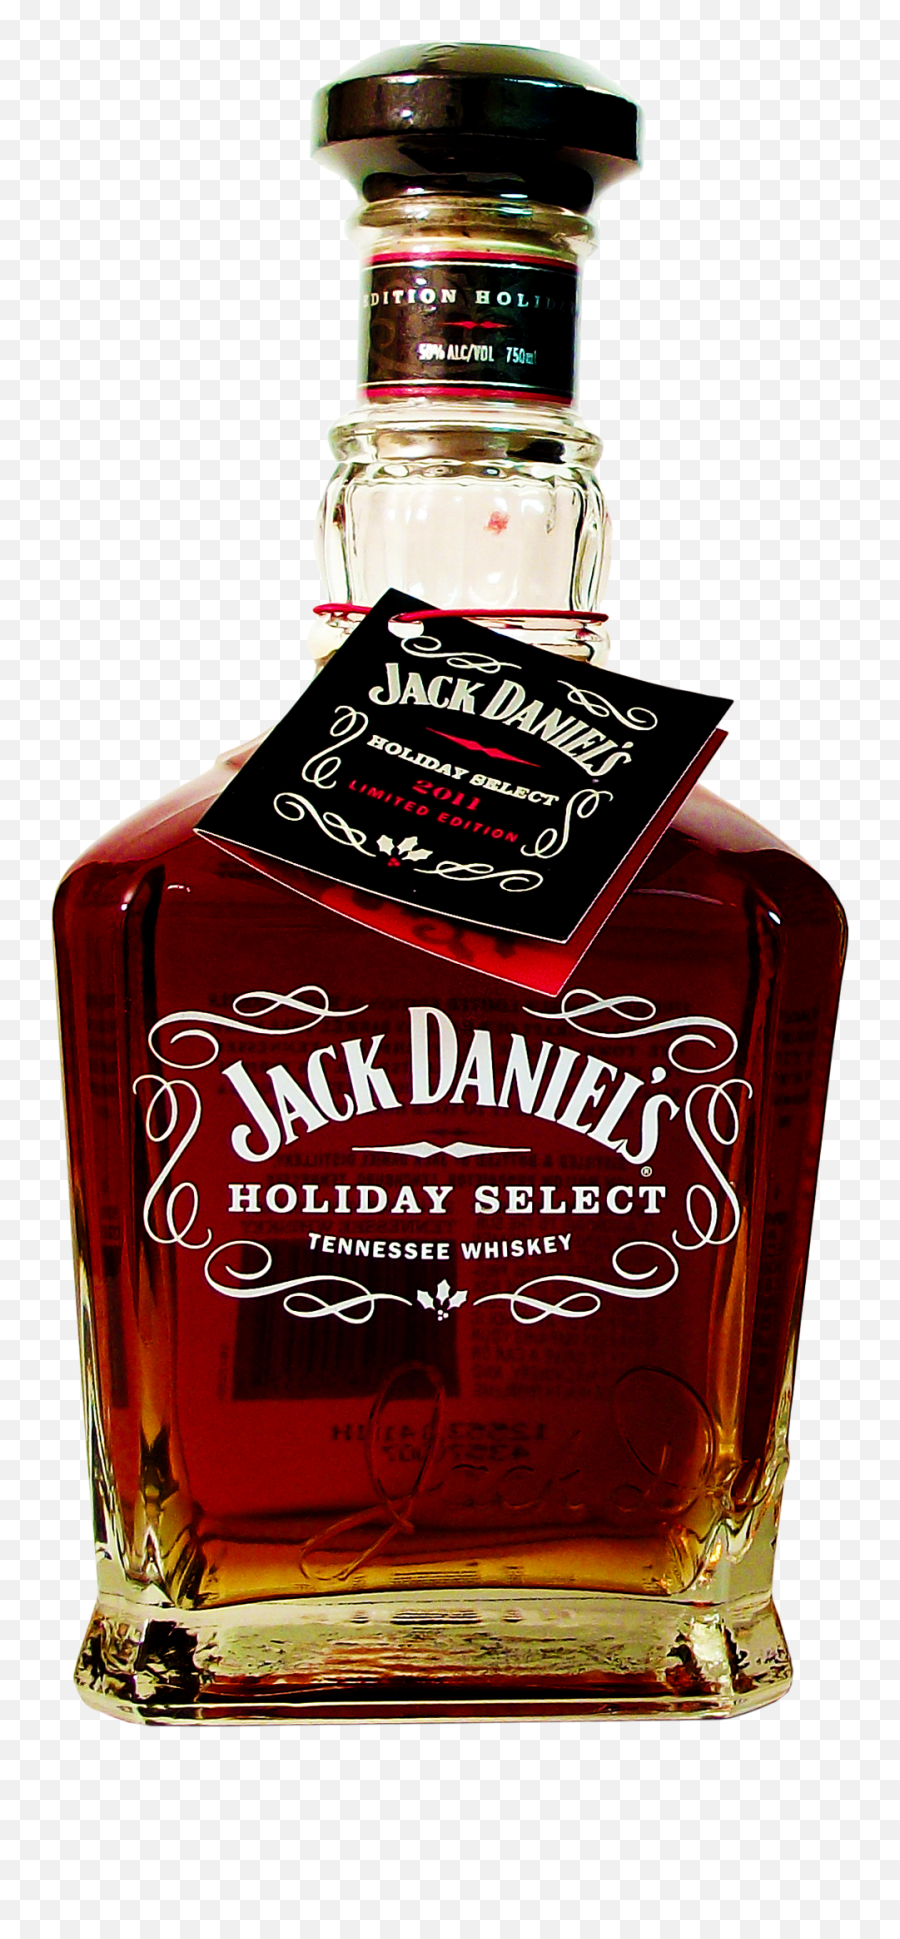 Download Master Distiller Series Bottle - Jack Daniels 2011 Holiday Select Png,Jack Daniels Bottle Png